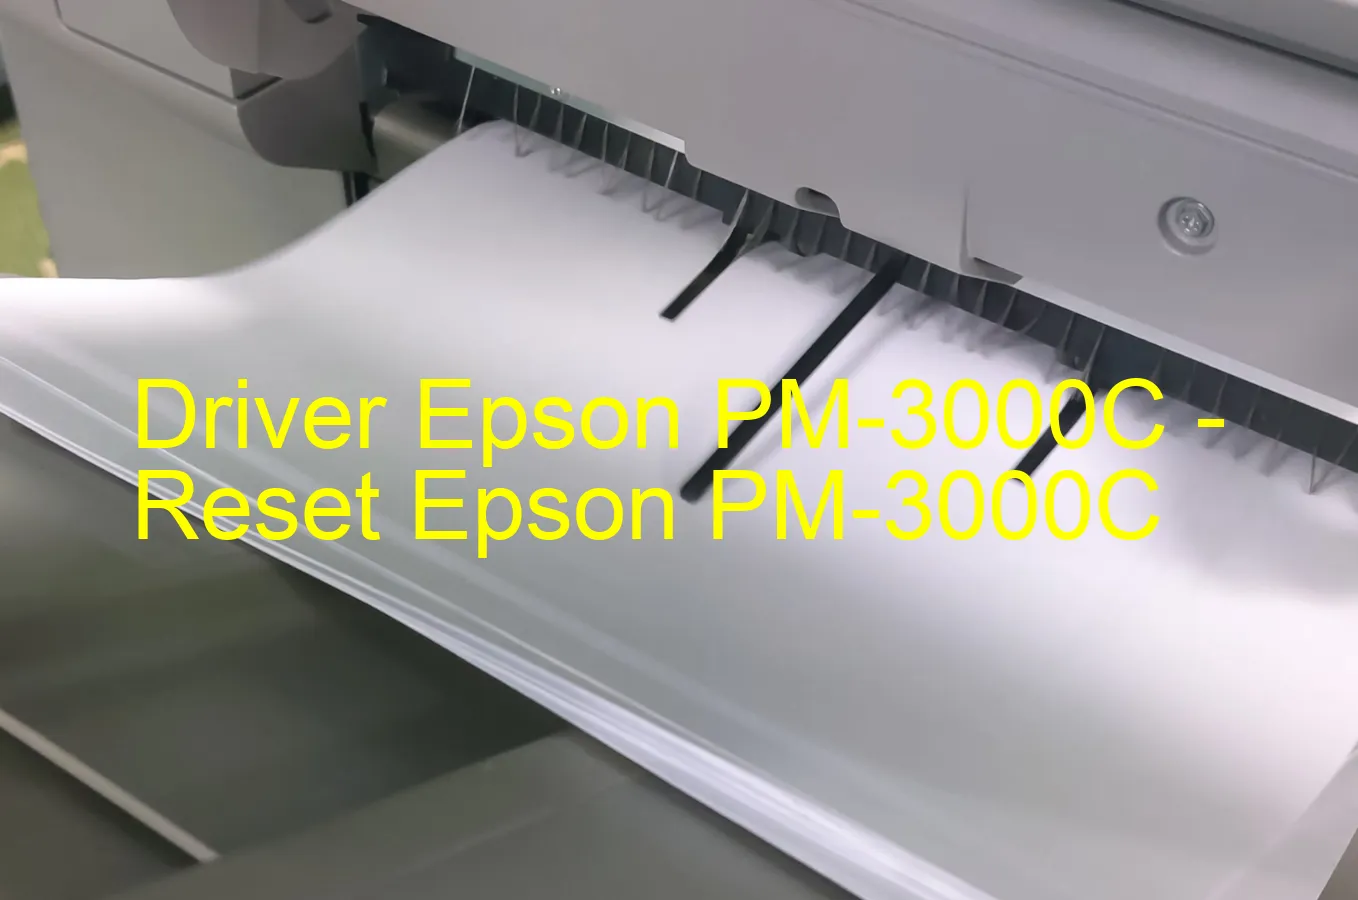 Epson PM-3000Cのドライバー、Epson PM-3000Cのリセットソフトウェア